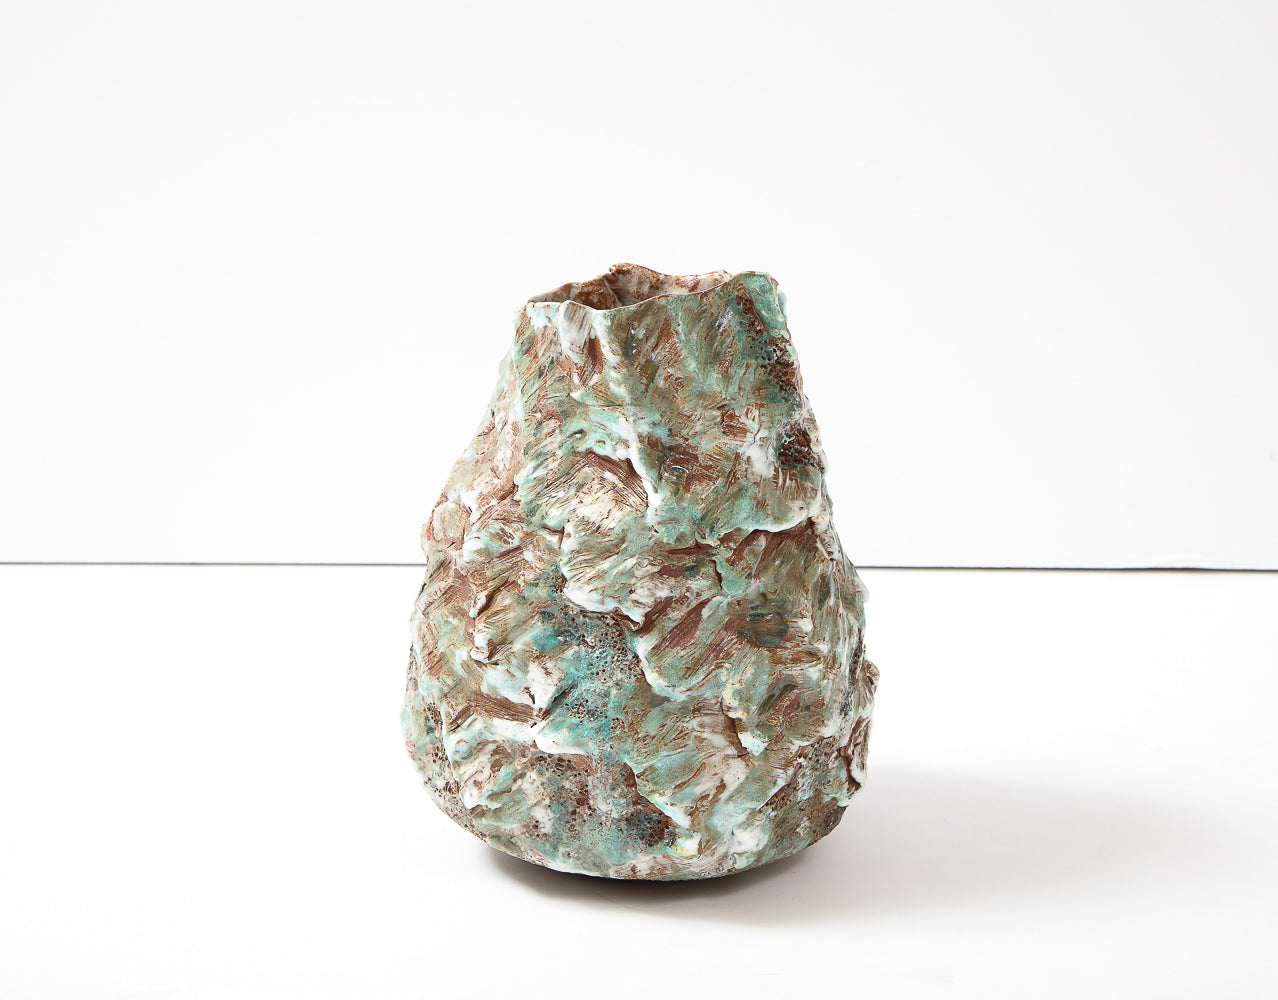 XL Sculptural Vase #3 by Dena Zemsky